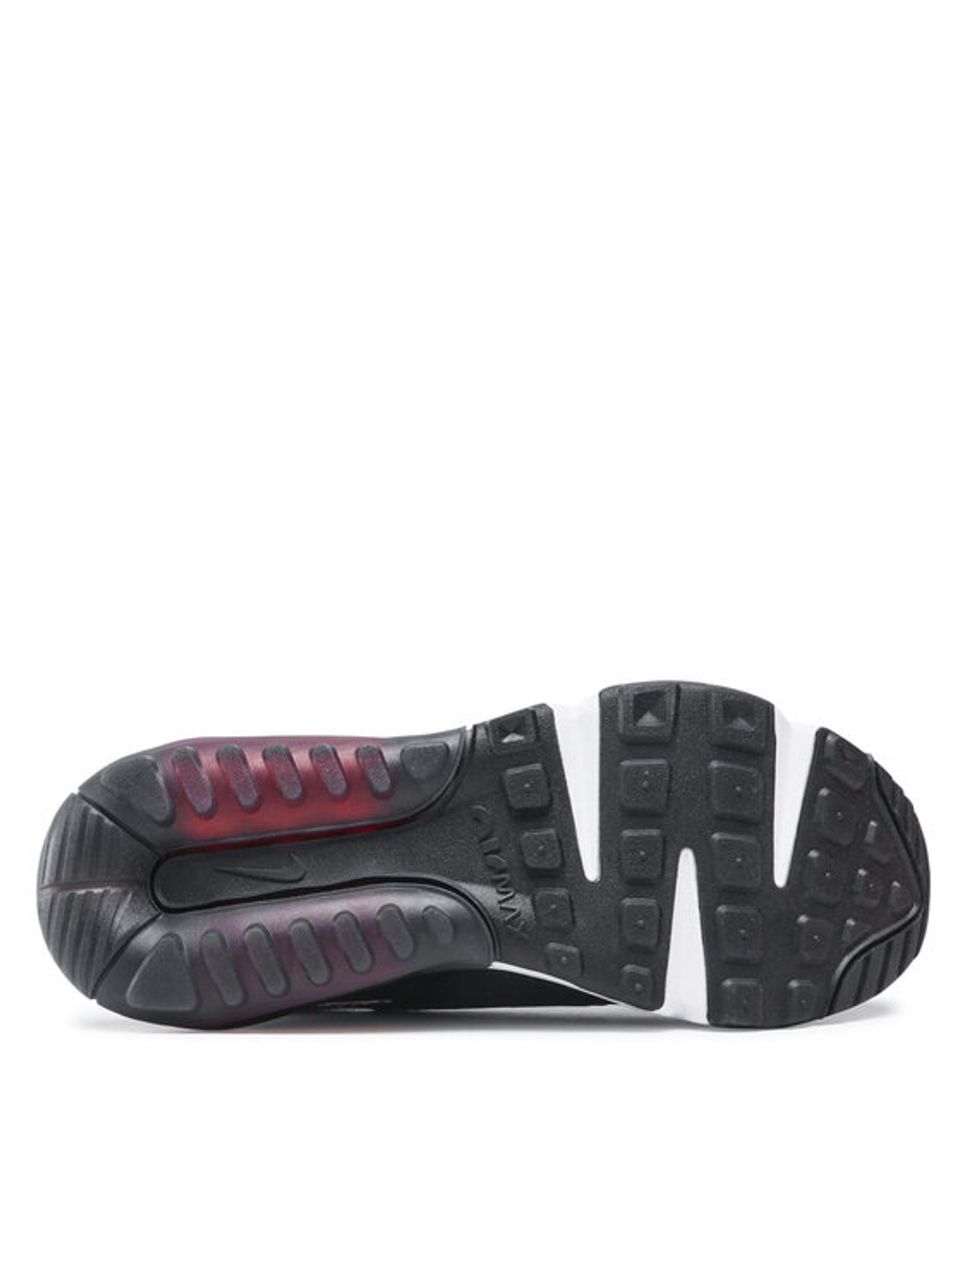 Nike Schuhe Air Max 2090 C/S (Gs) DH9738 001 Grau